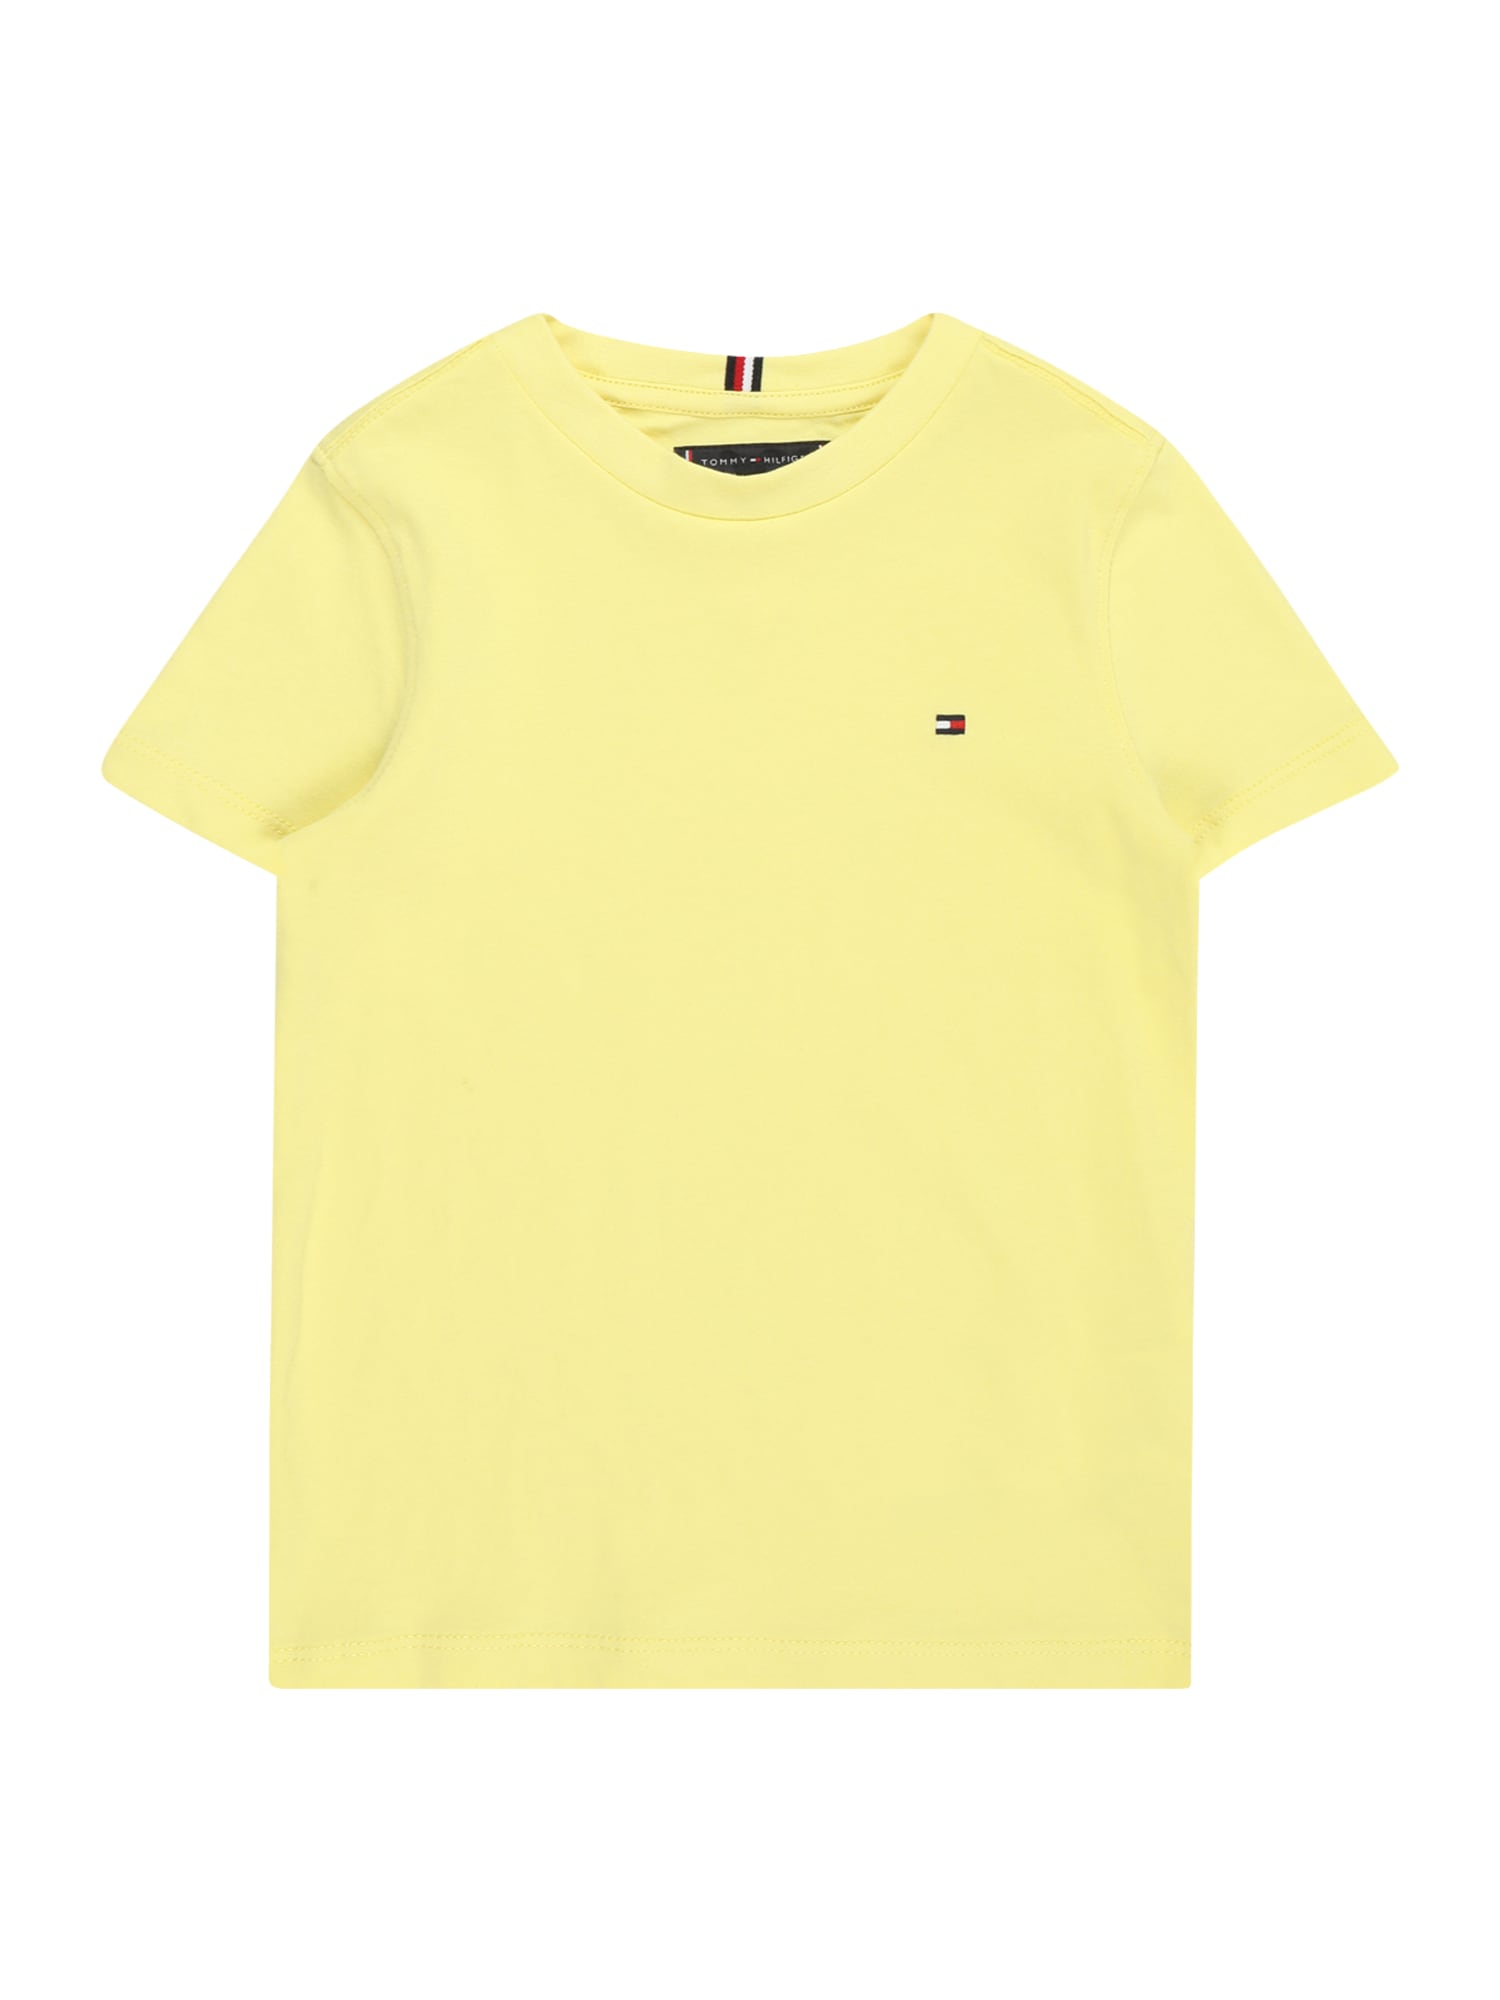 TOMMY HILFIGER Marškinėliai 'ESSENTIAL' geltona / raudona / juoda / balta